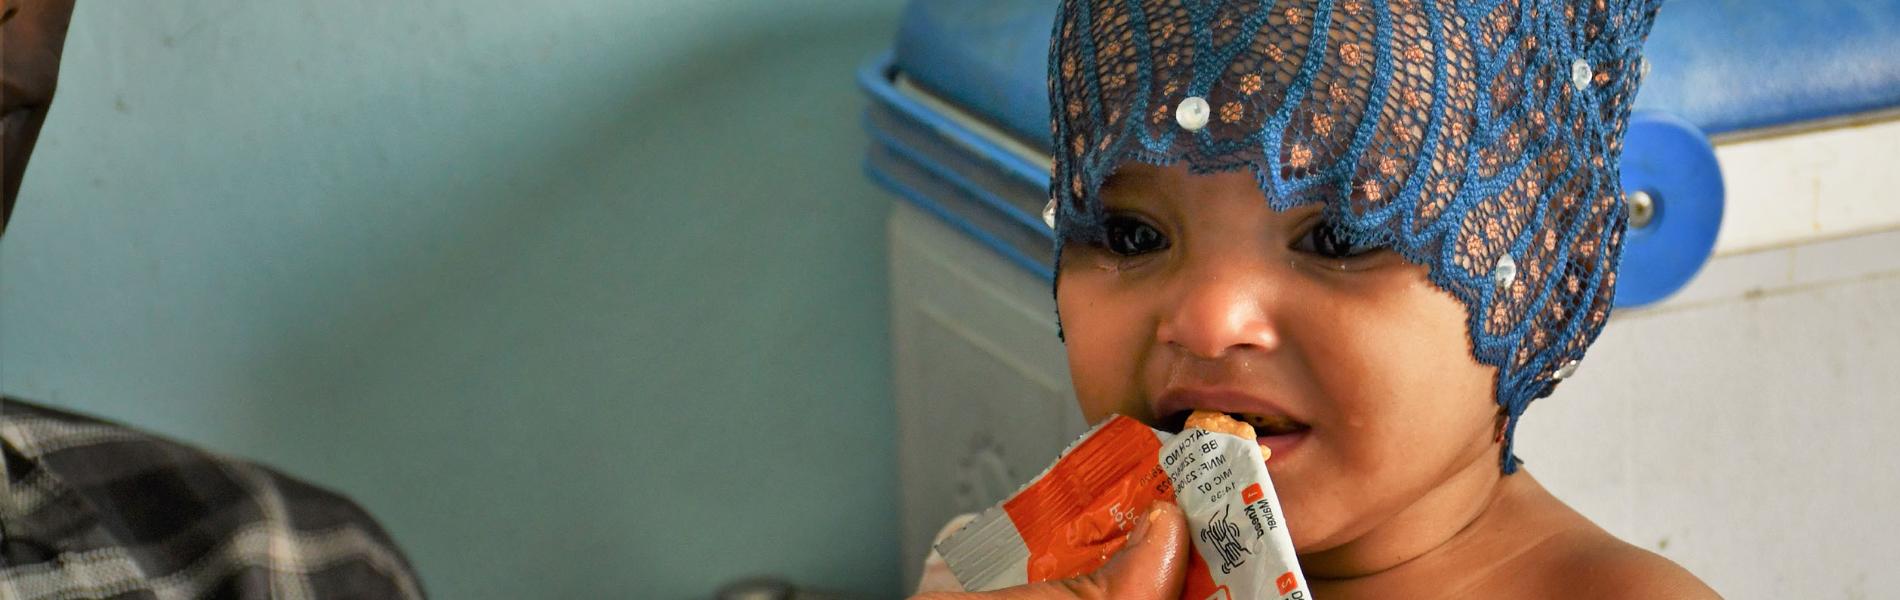 Nef Vakfı İle Yemen’de Açlıkla Mücadele Ediyoruz